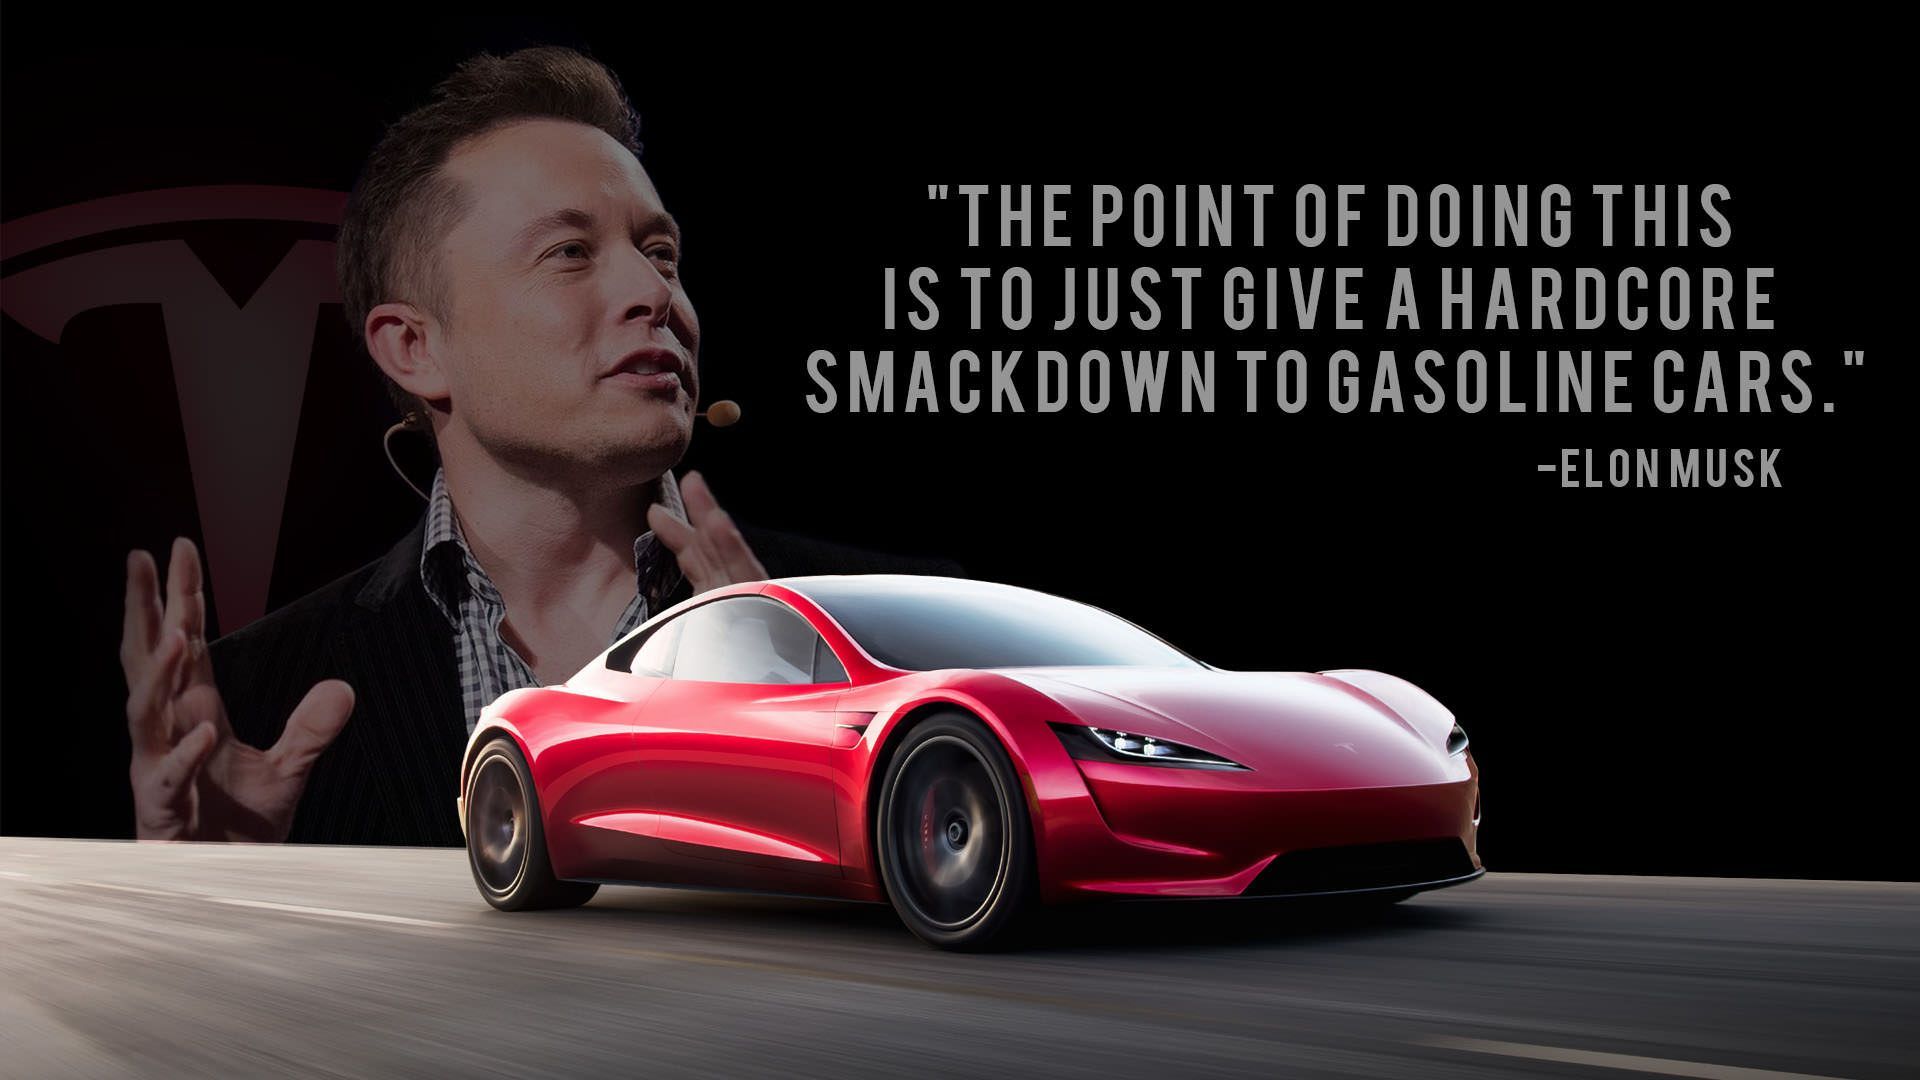 Elon Musk Roadster Wallpaper. Roadsters, Tesla model x, Elon